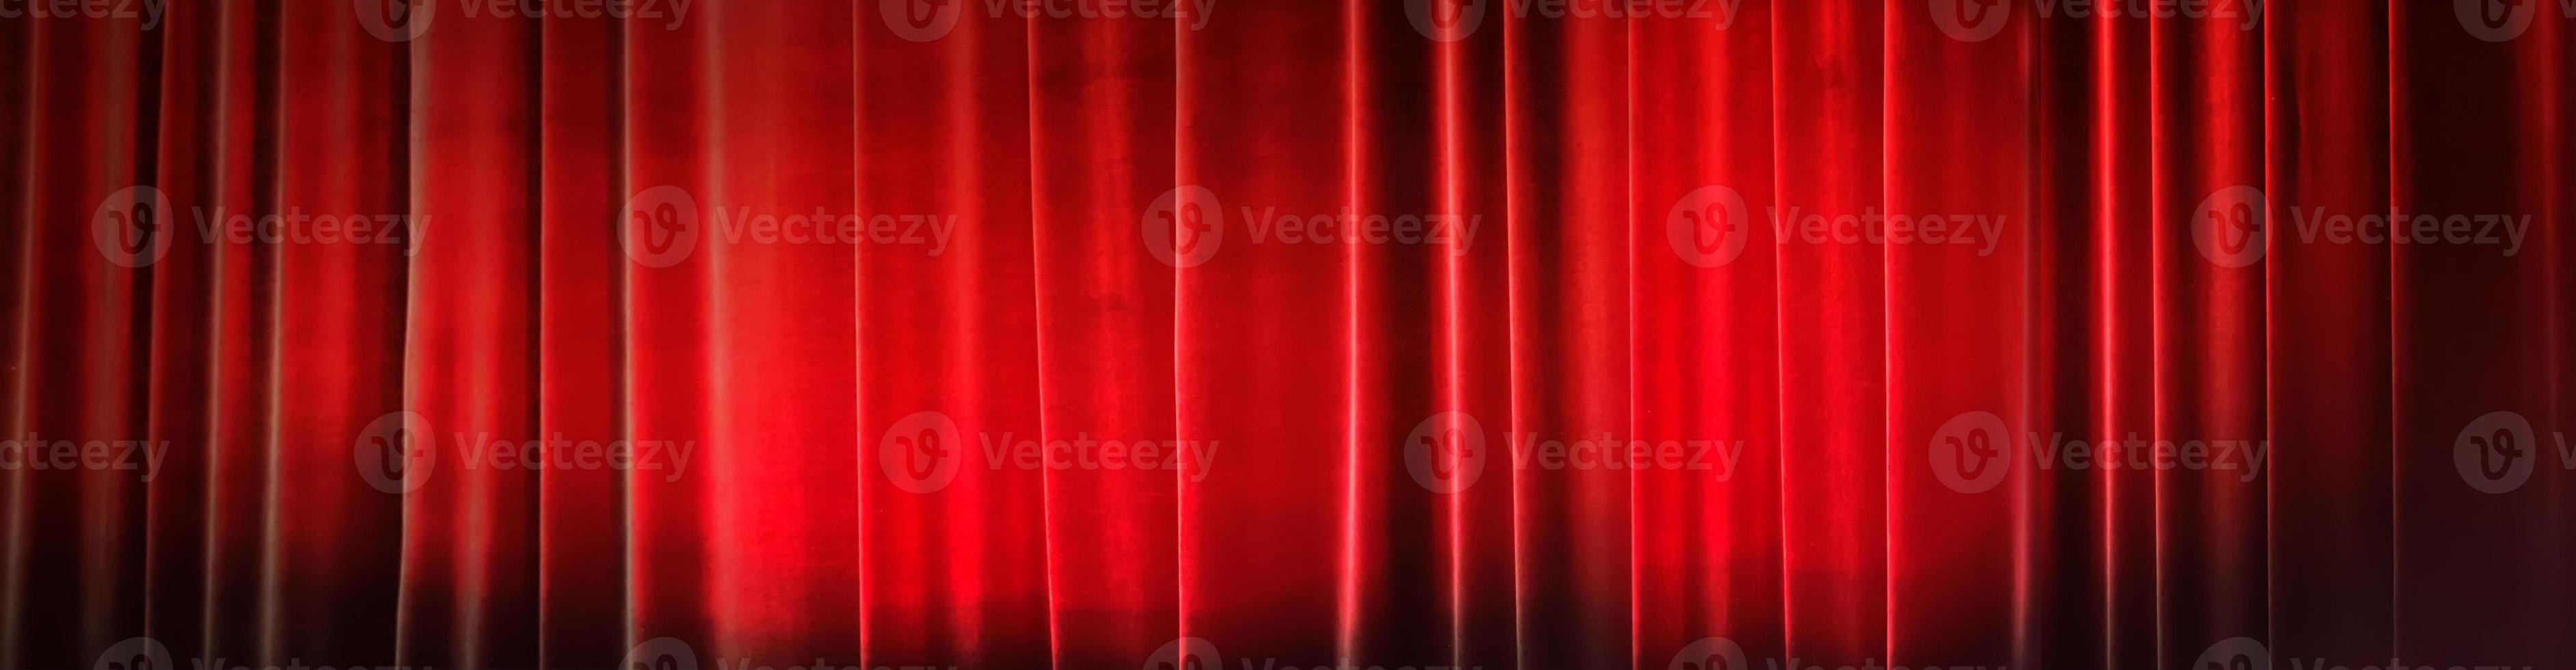 bandera antecedentes concierto cortina rojo. teatro cortinas foto